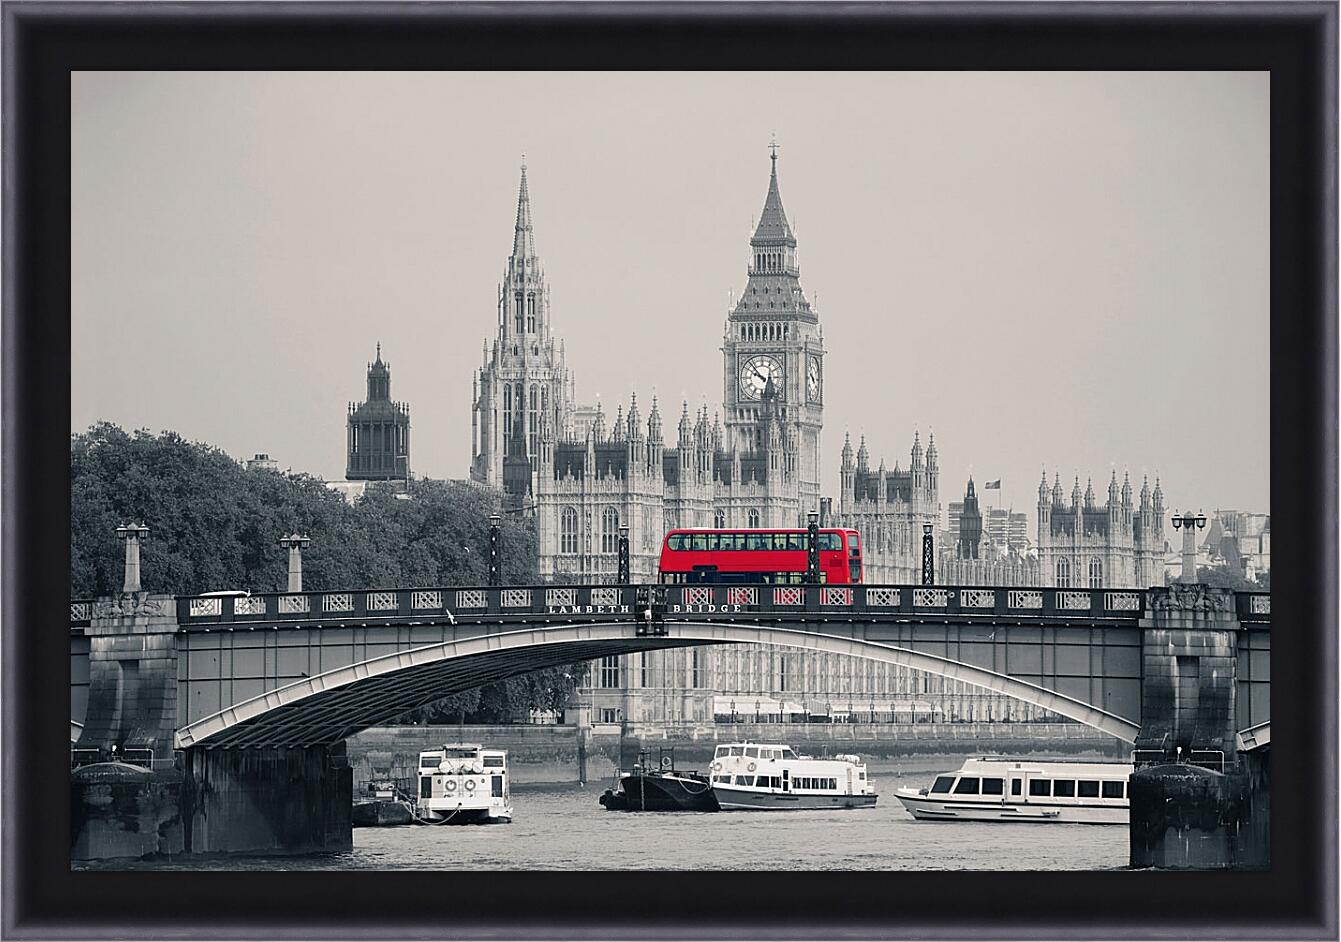 Картина в раме - Лондон. Красный автобус.